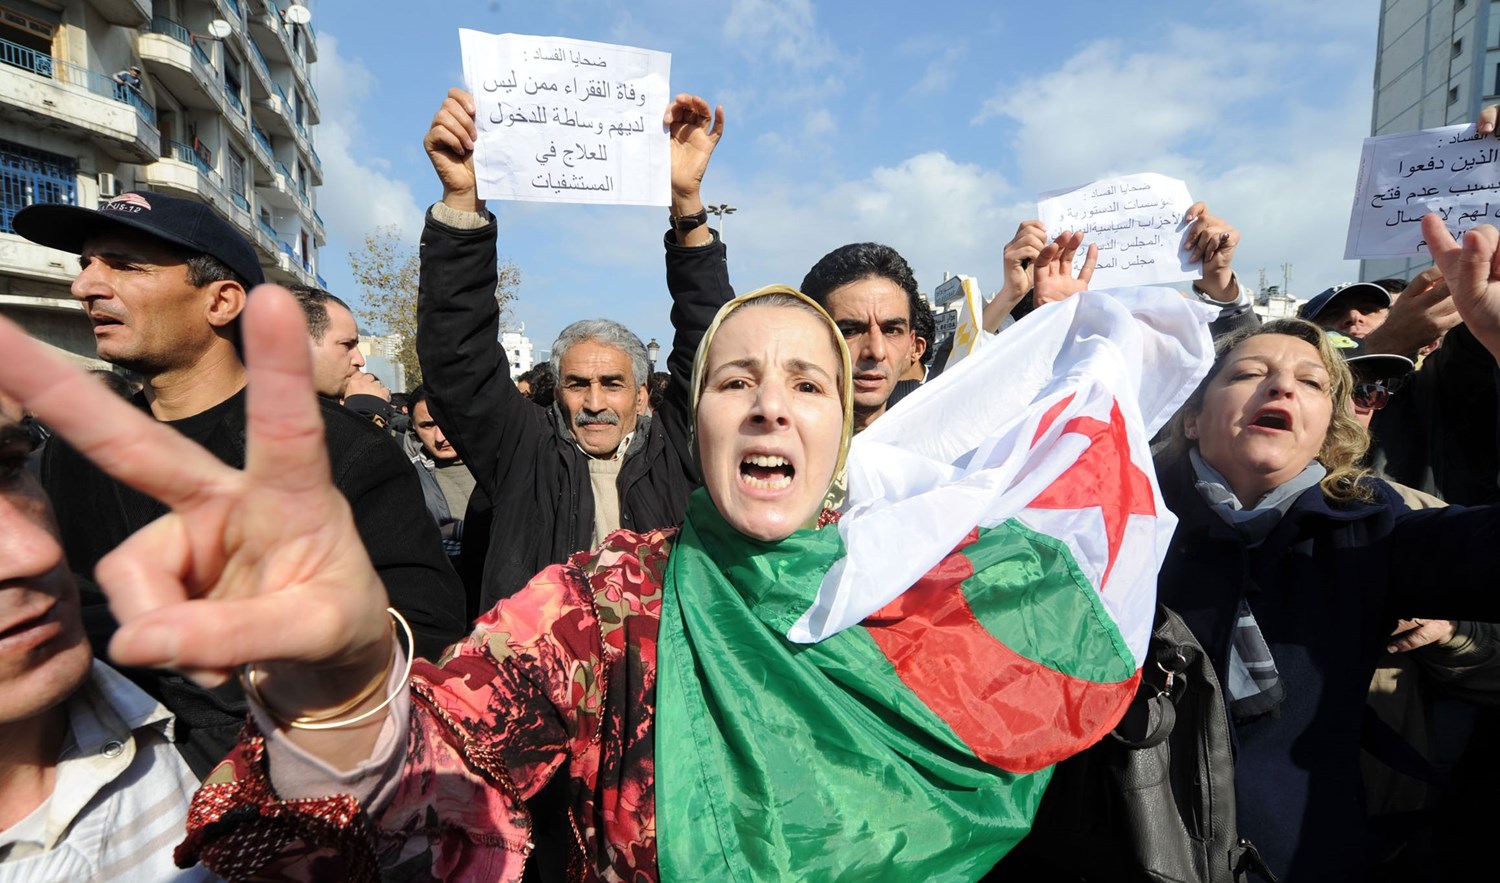 حزب جزائري يستنكر تجريم العمل السياسي وعدم توفر المواد الاستهلاكية للمواطنين